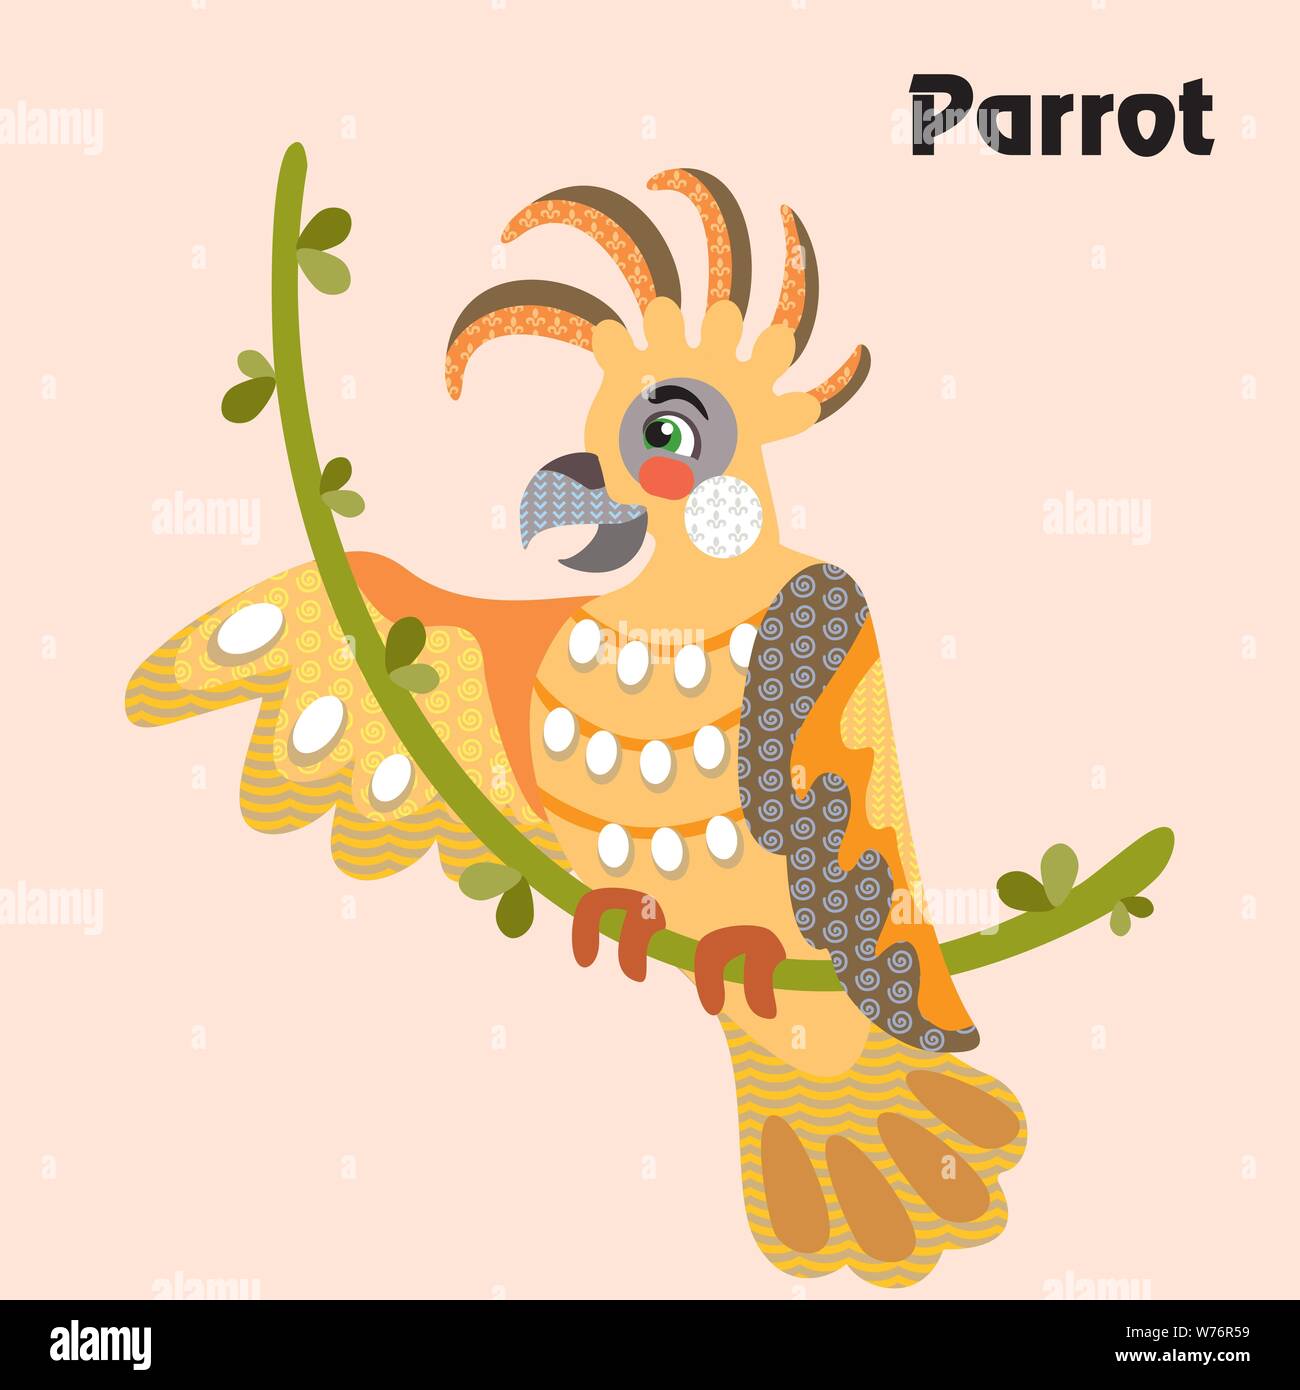 Bunt dekorativ Umrisse lustig bunte Papagei sitzt auf einem Weinstock im Profil. Wilde Tiere und Vögel Vektor cartoon Flachbild Abbildung in verschiedenen c Stock Vektor